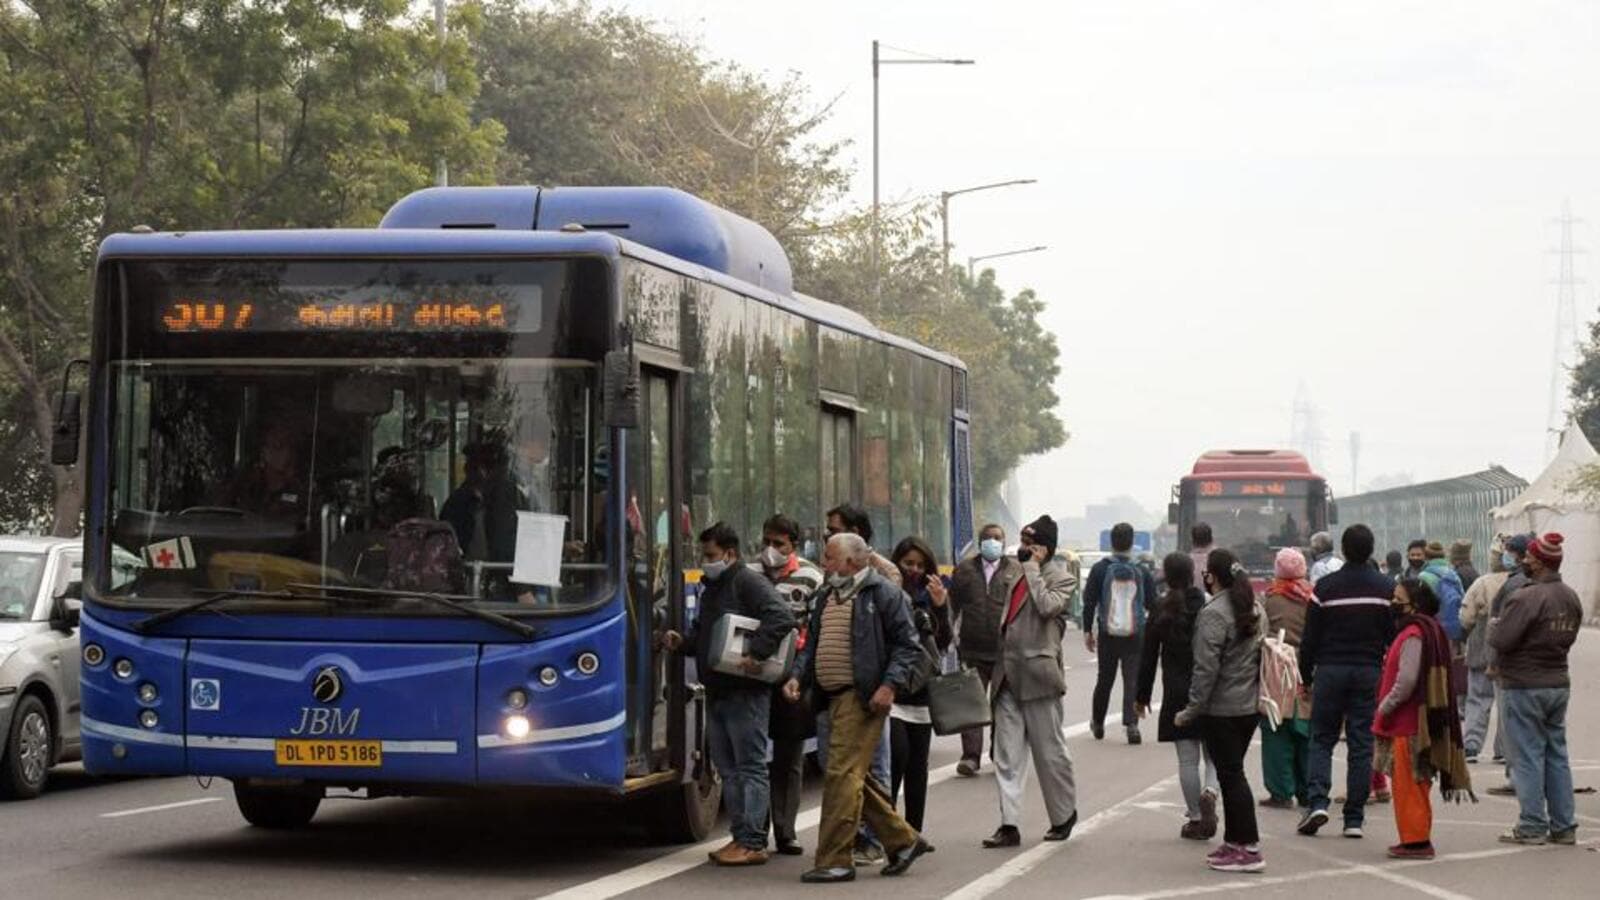 tourist bus price in delhi